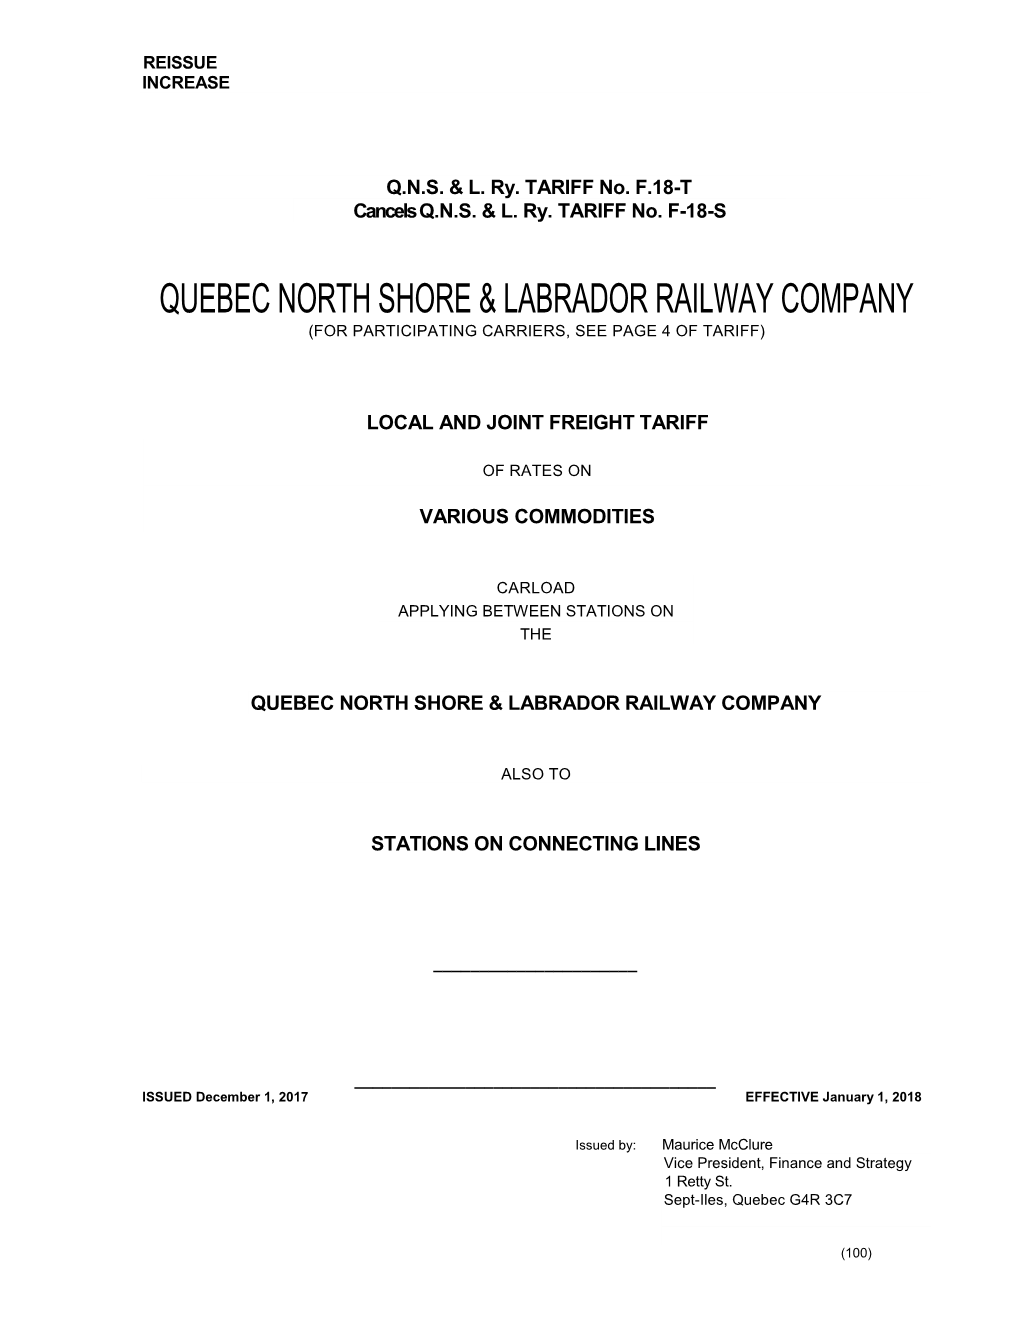 Quebec North Shore & Labrador Railway Company